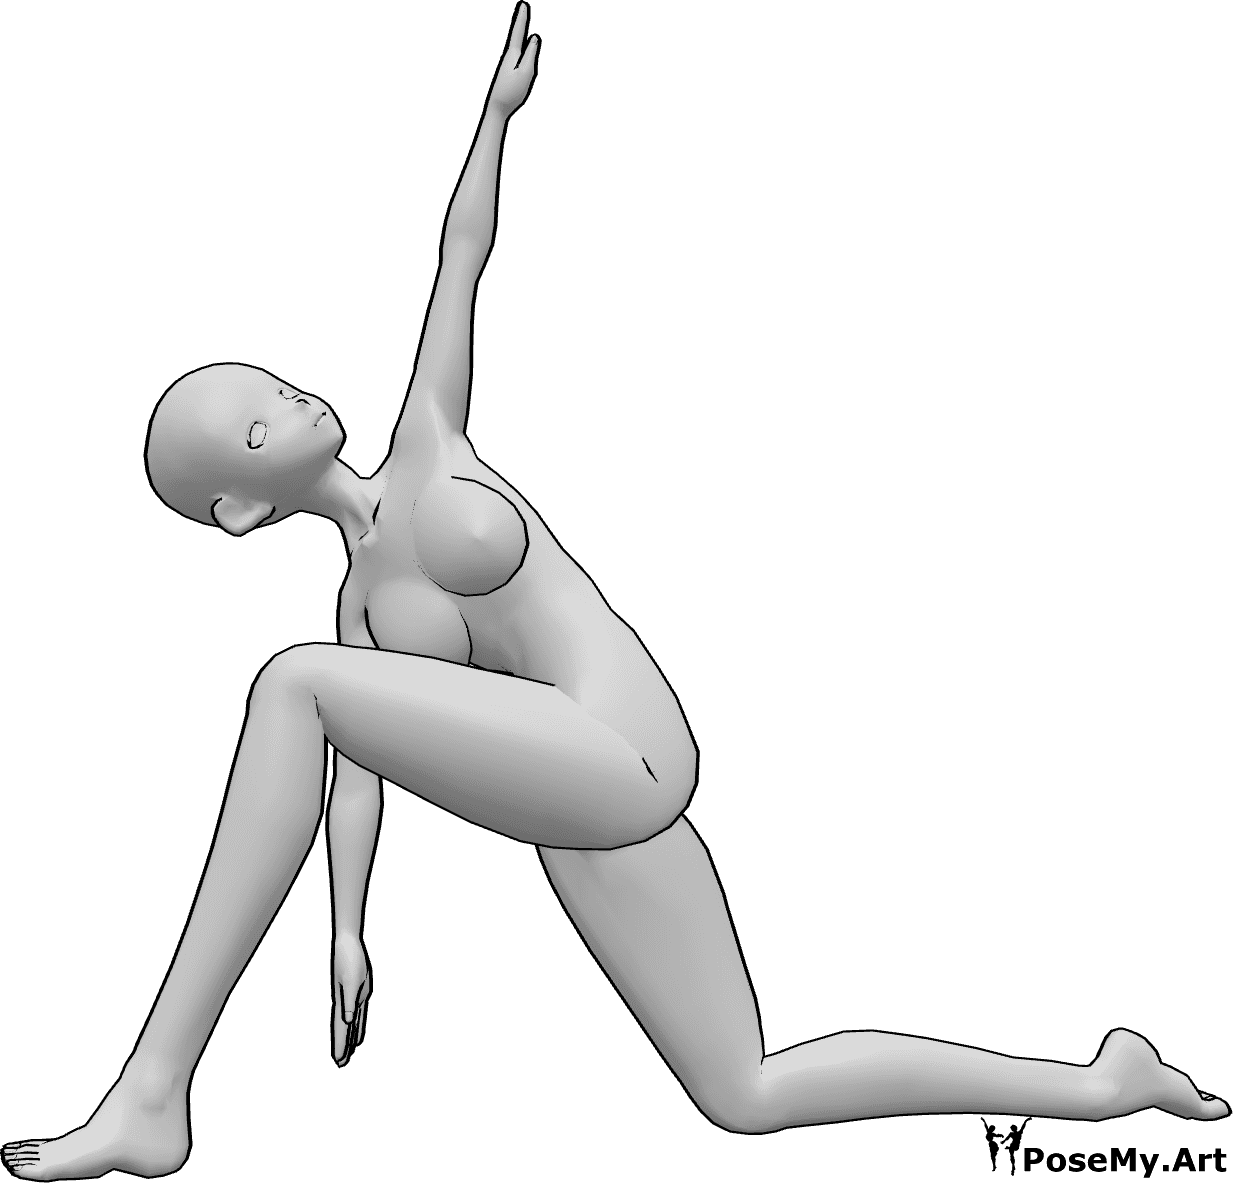 Référence des poses- Pose de yoga à genoux - Une femme anime fait du yoga, s'agenouille et s'étire, lève la main gauche et regarde en l'air.